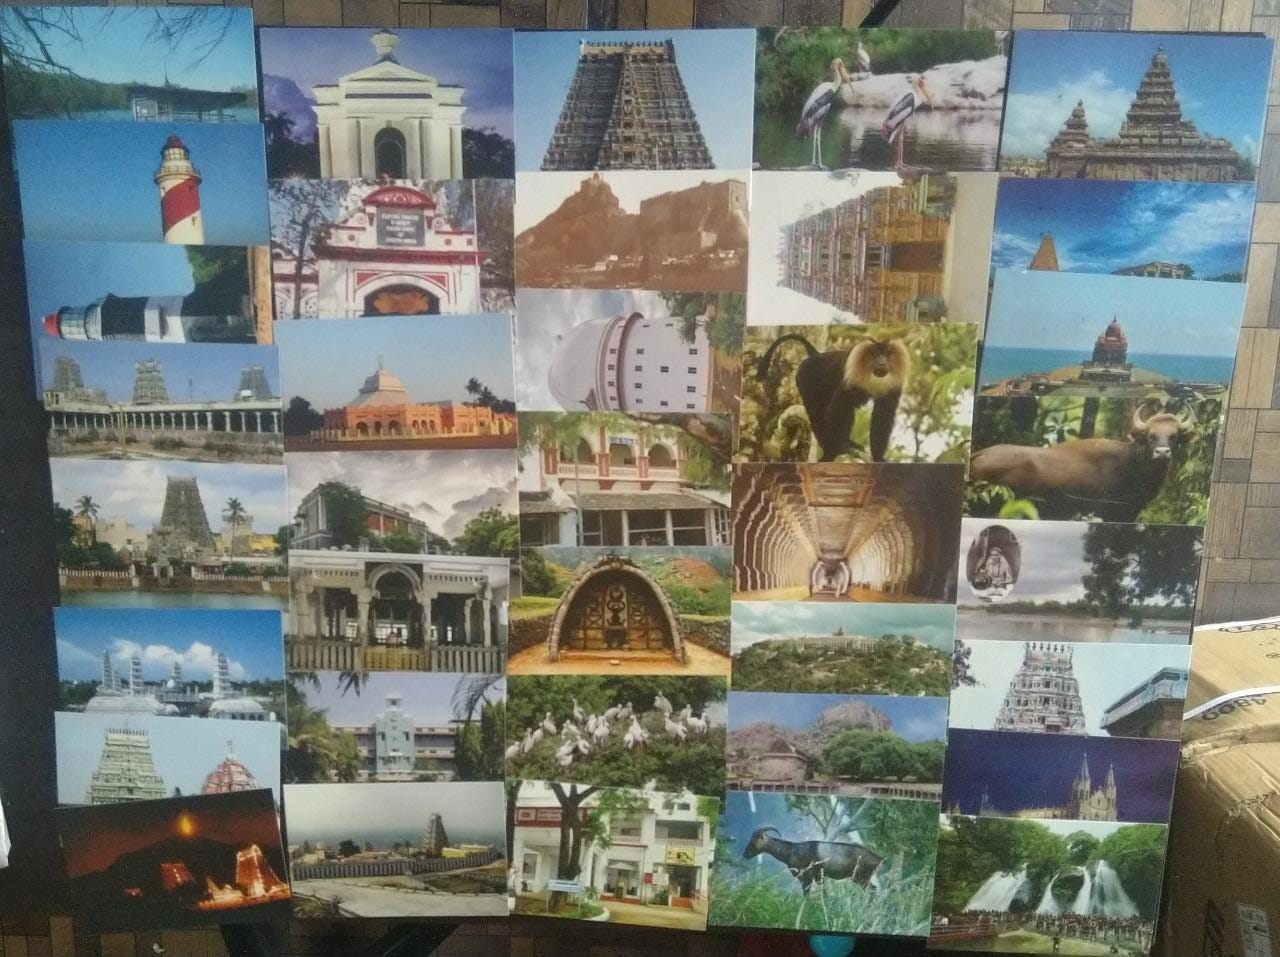 सचित्र रद्दीकरण-तमिलनाडु से रंगीन पोस्टकार्डों पर 37 भिन्न।